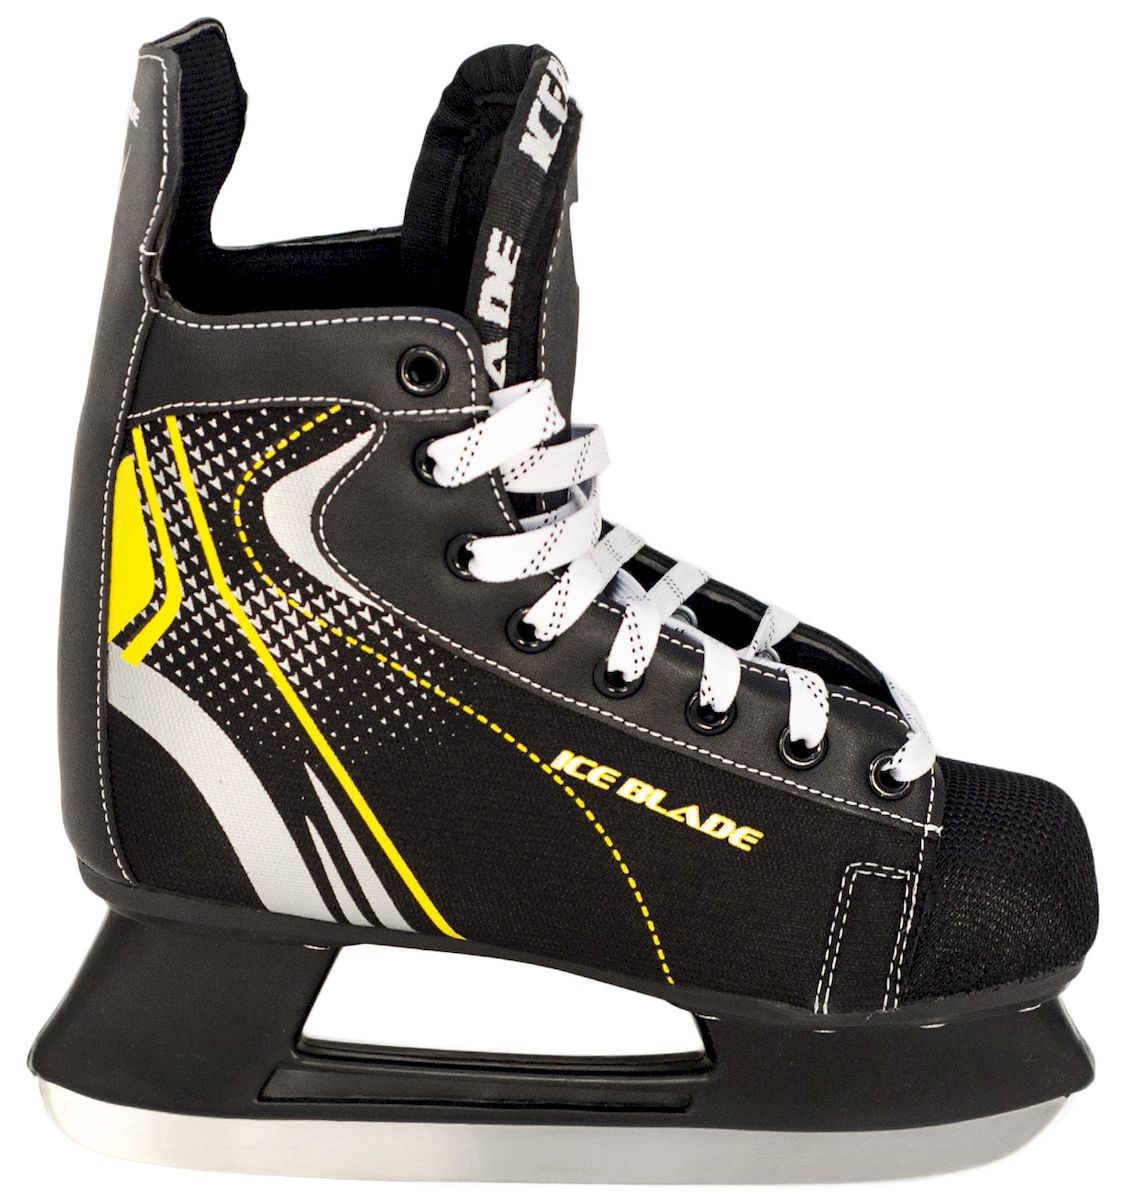 Коньки хоккейные Ice Blade Shark, цвет: черный, желтый. УТ-00006841. Размер 34